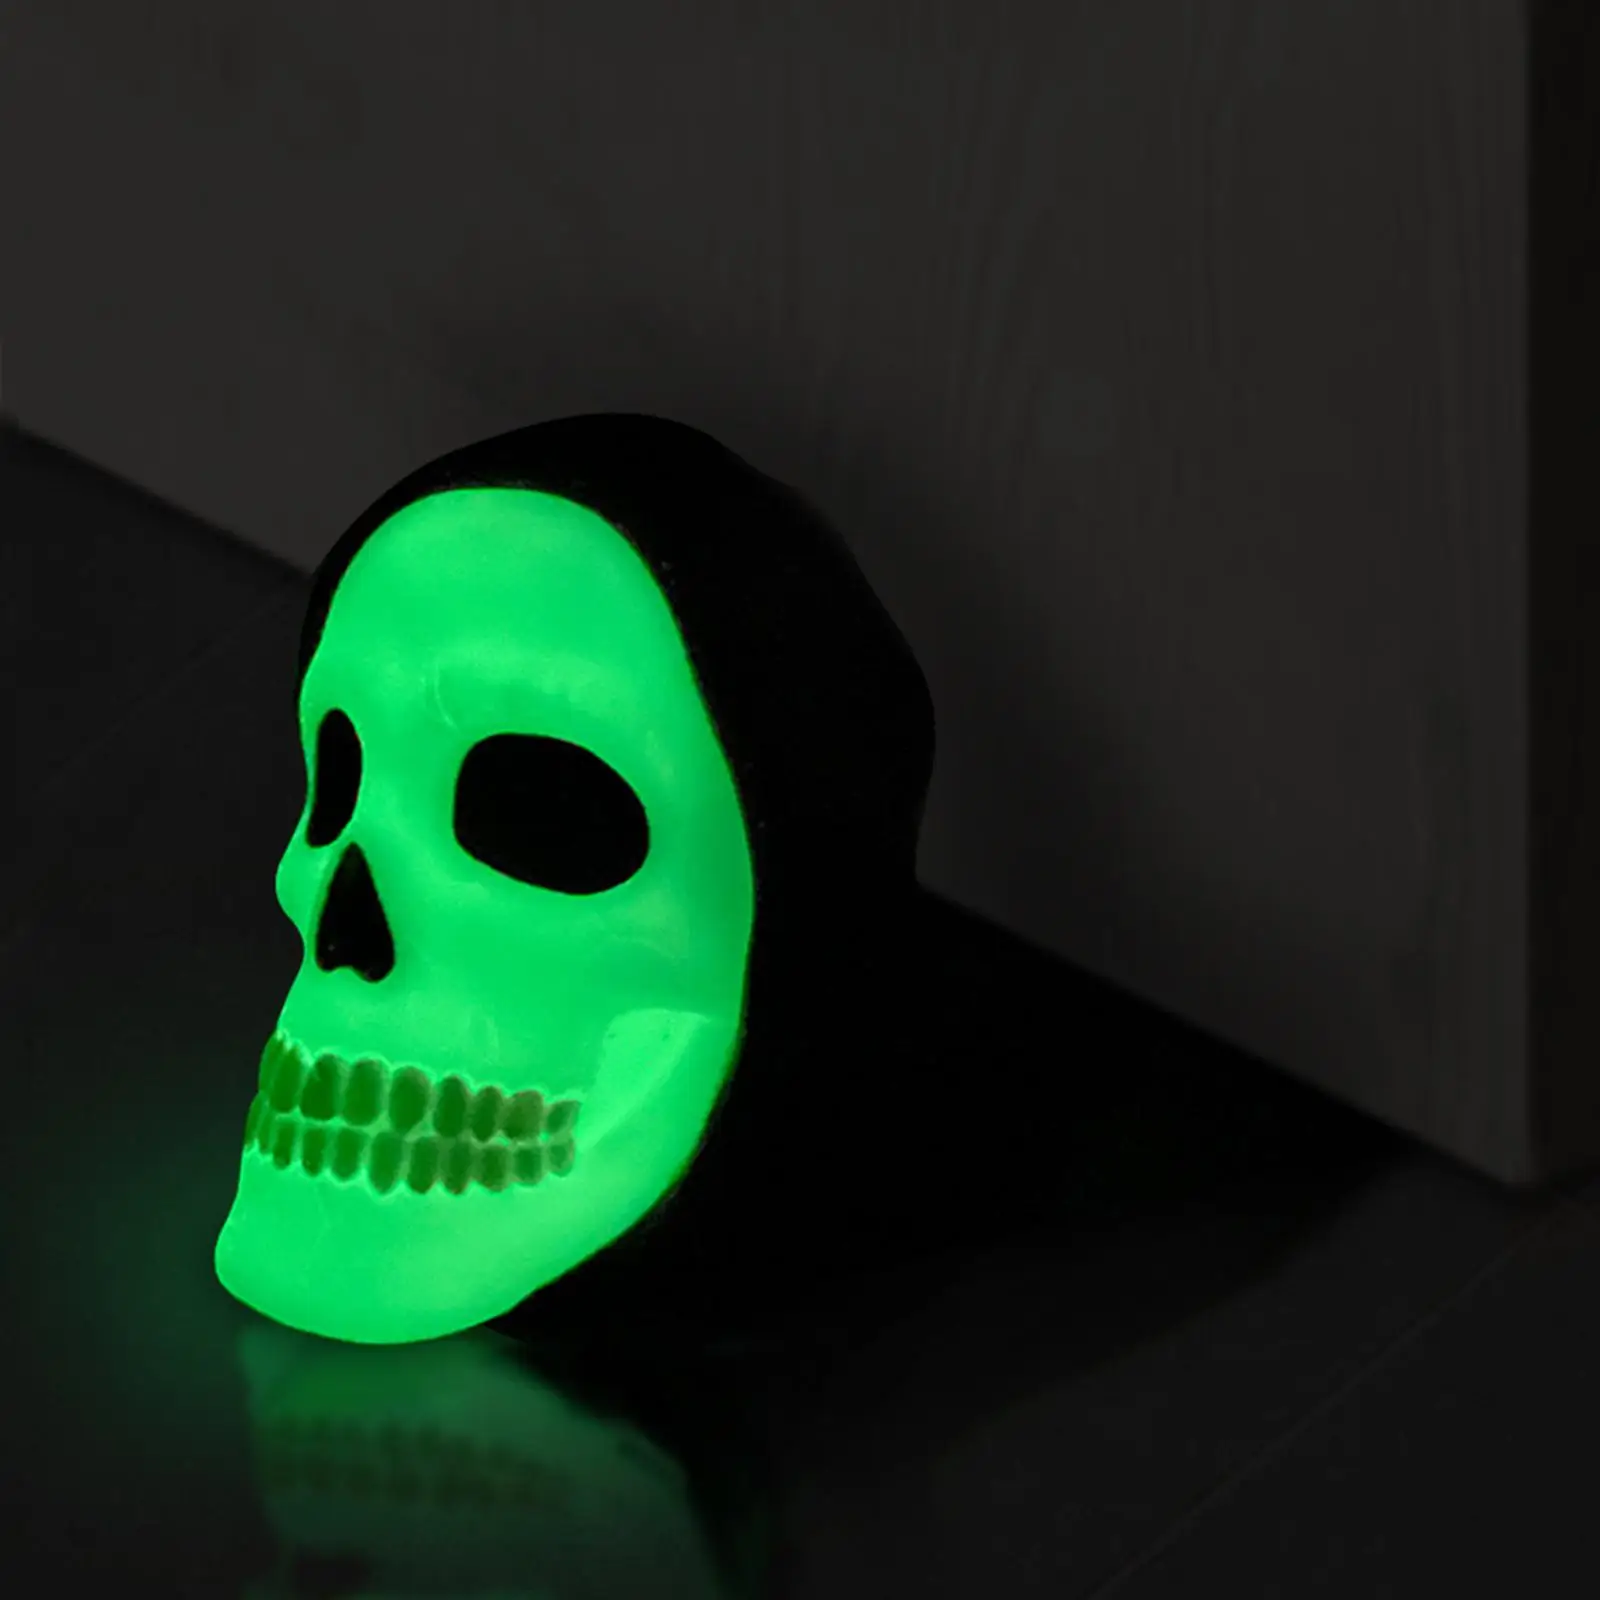 Skull Door Stopper Anti Slip Decorative Glow Doorstop Bedroom Bathroom Gift